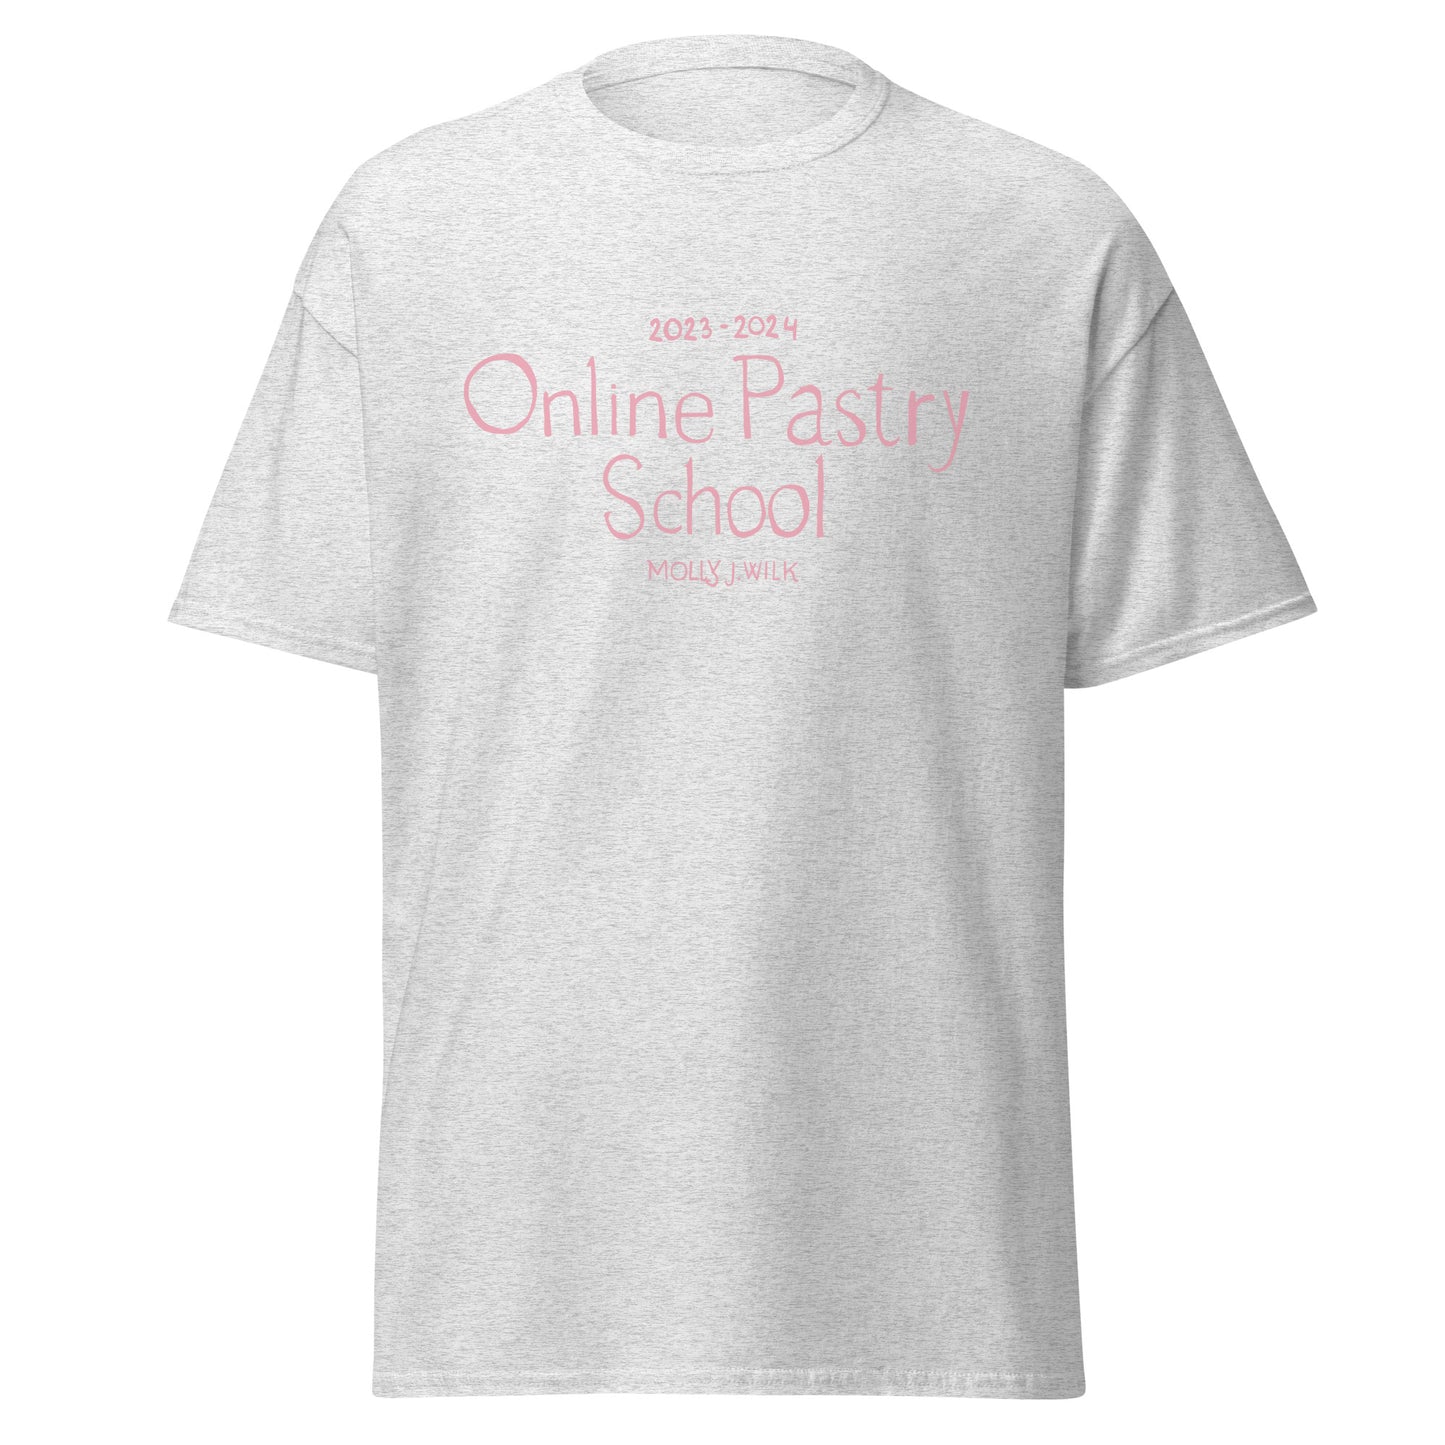 Online Pastry School '23-'24 T-Shirt